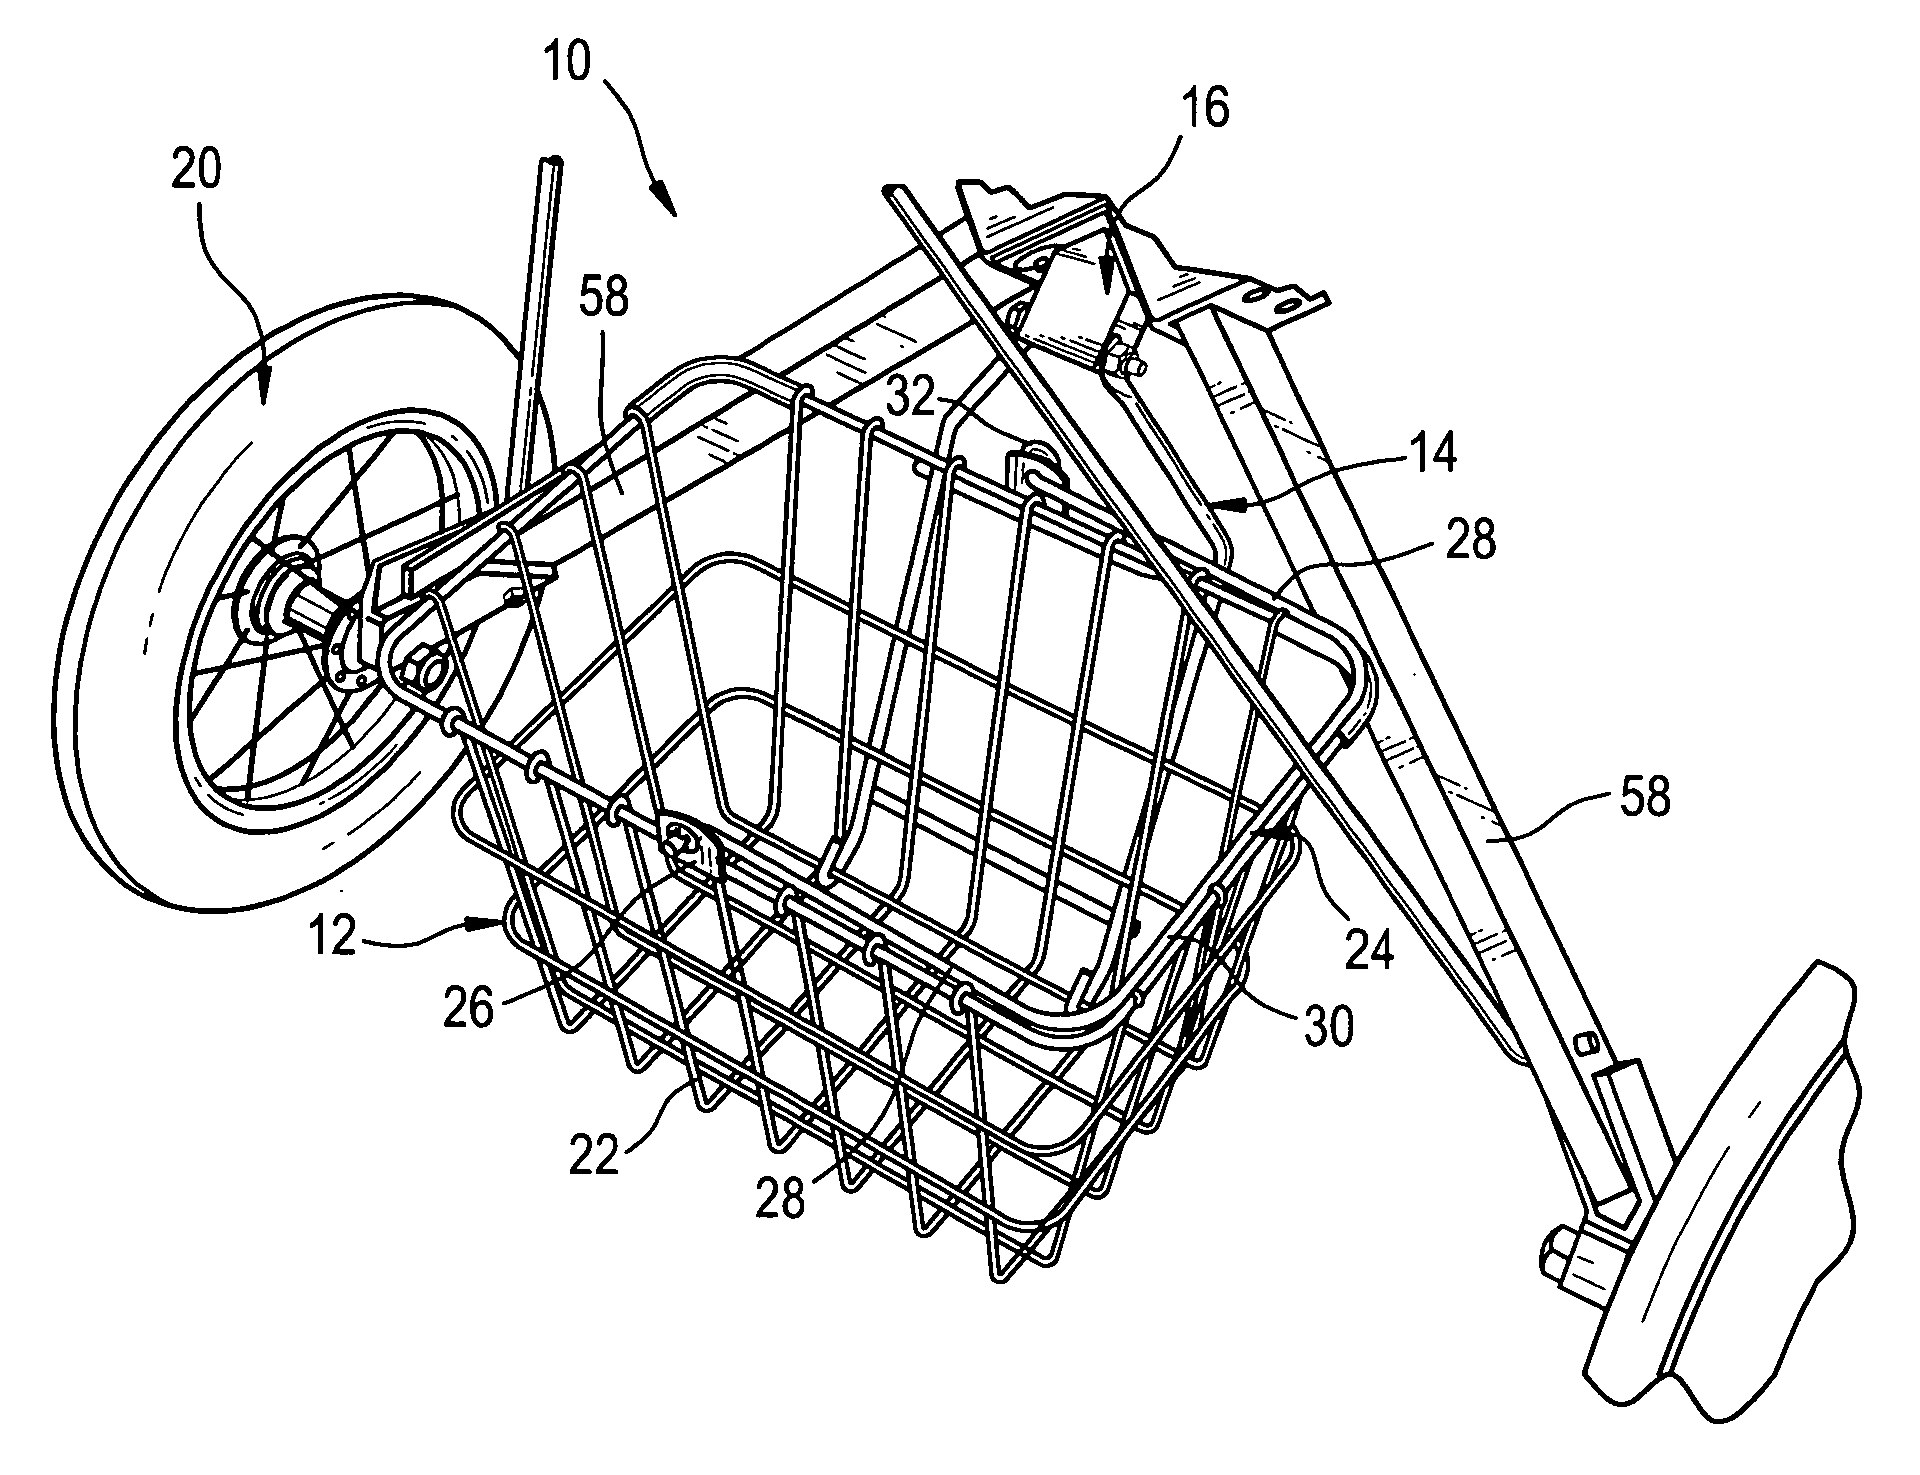 Basket assembly for a golf bag cart